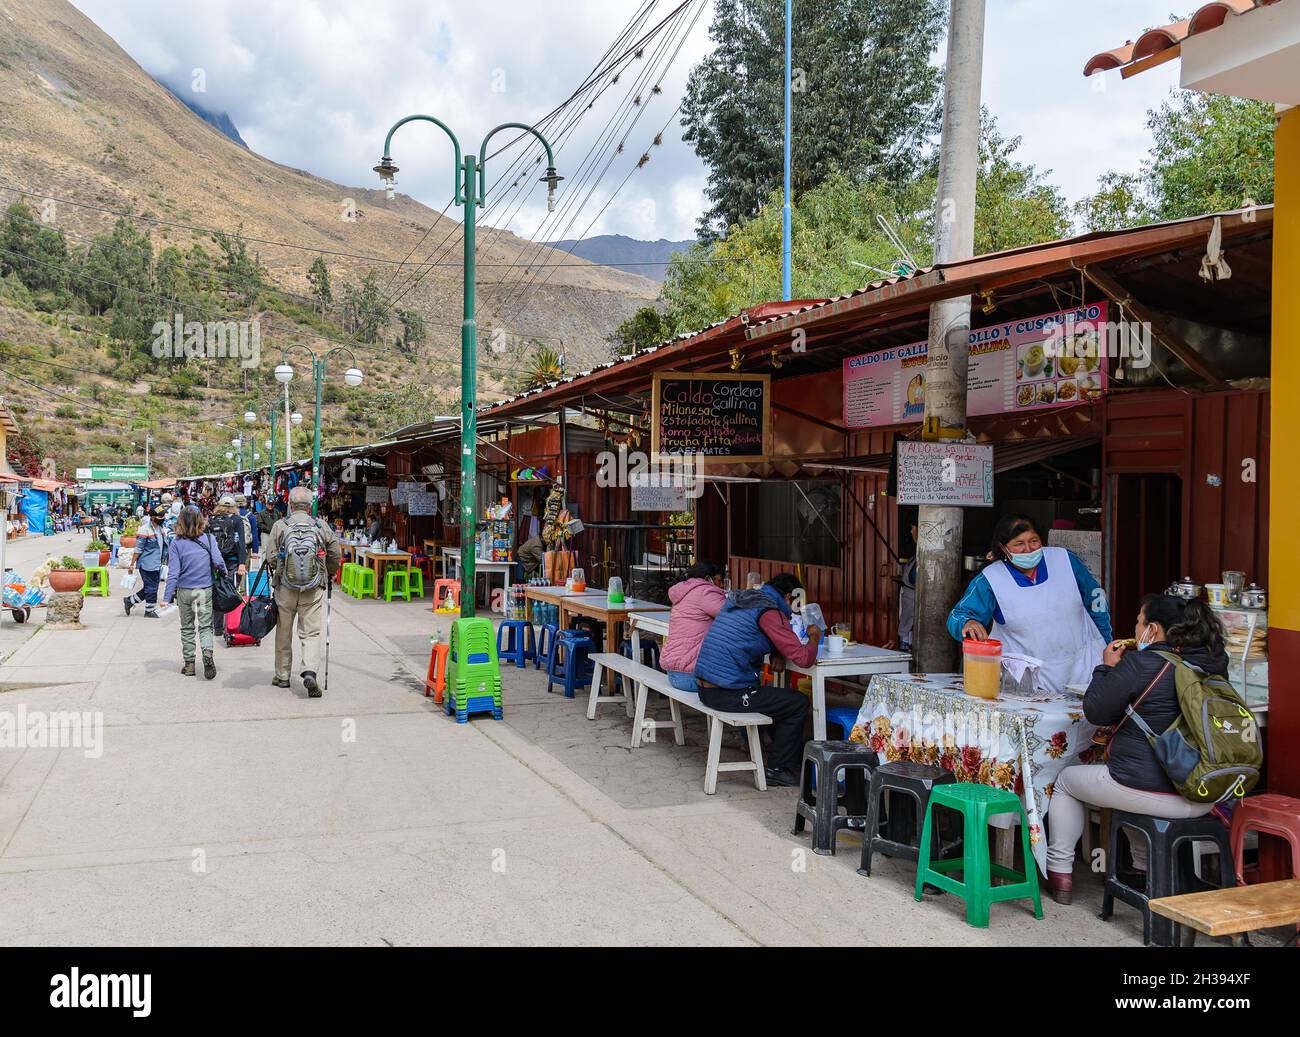 La comida está a lo largo de la calle concurrida hasta la estación de tren. Ollantaytambo, Cuzco, Perú. Foto de stock